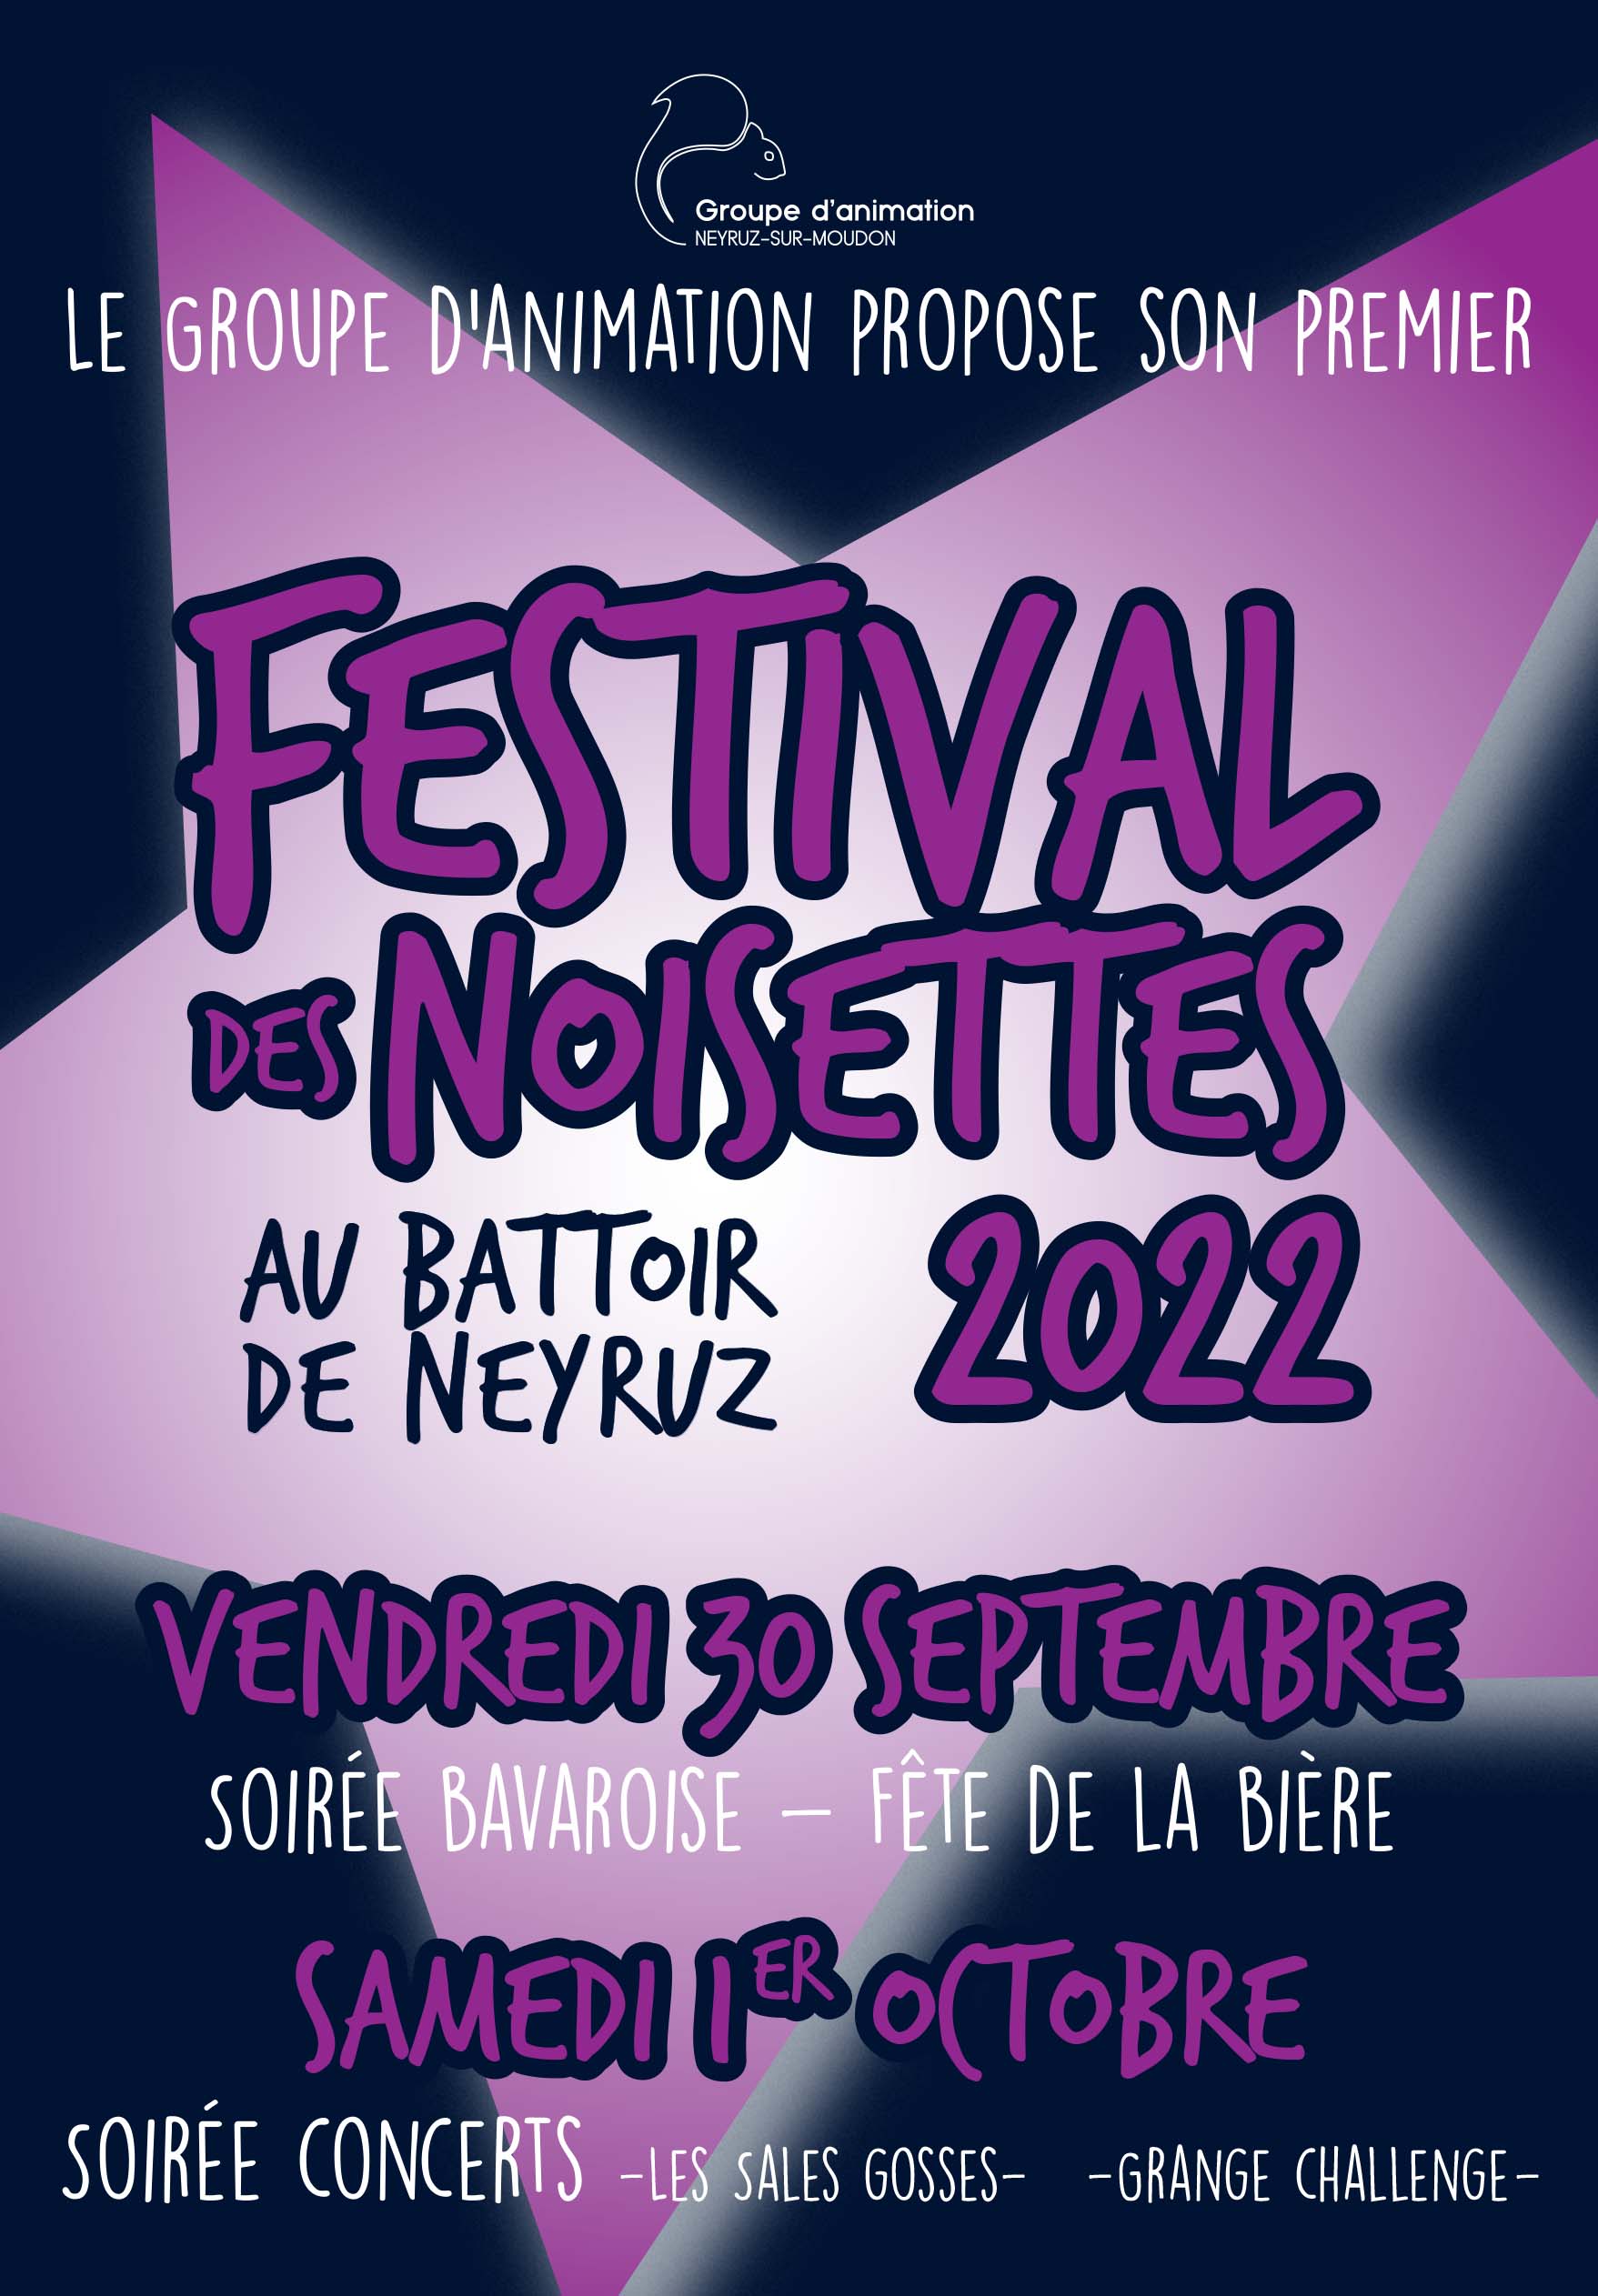 Festival des Noisettes – Soirée Bavaroise